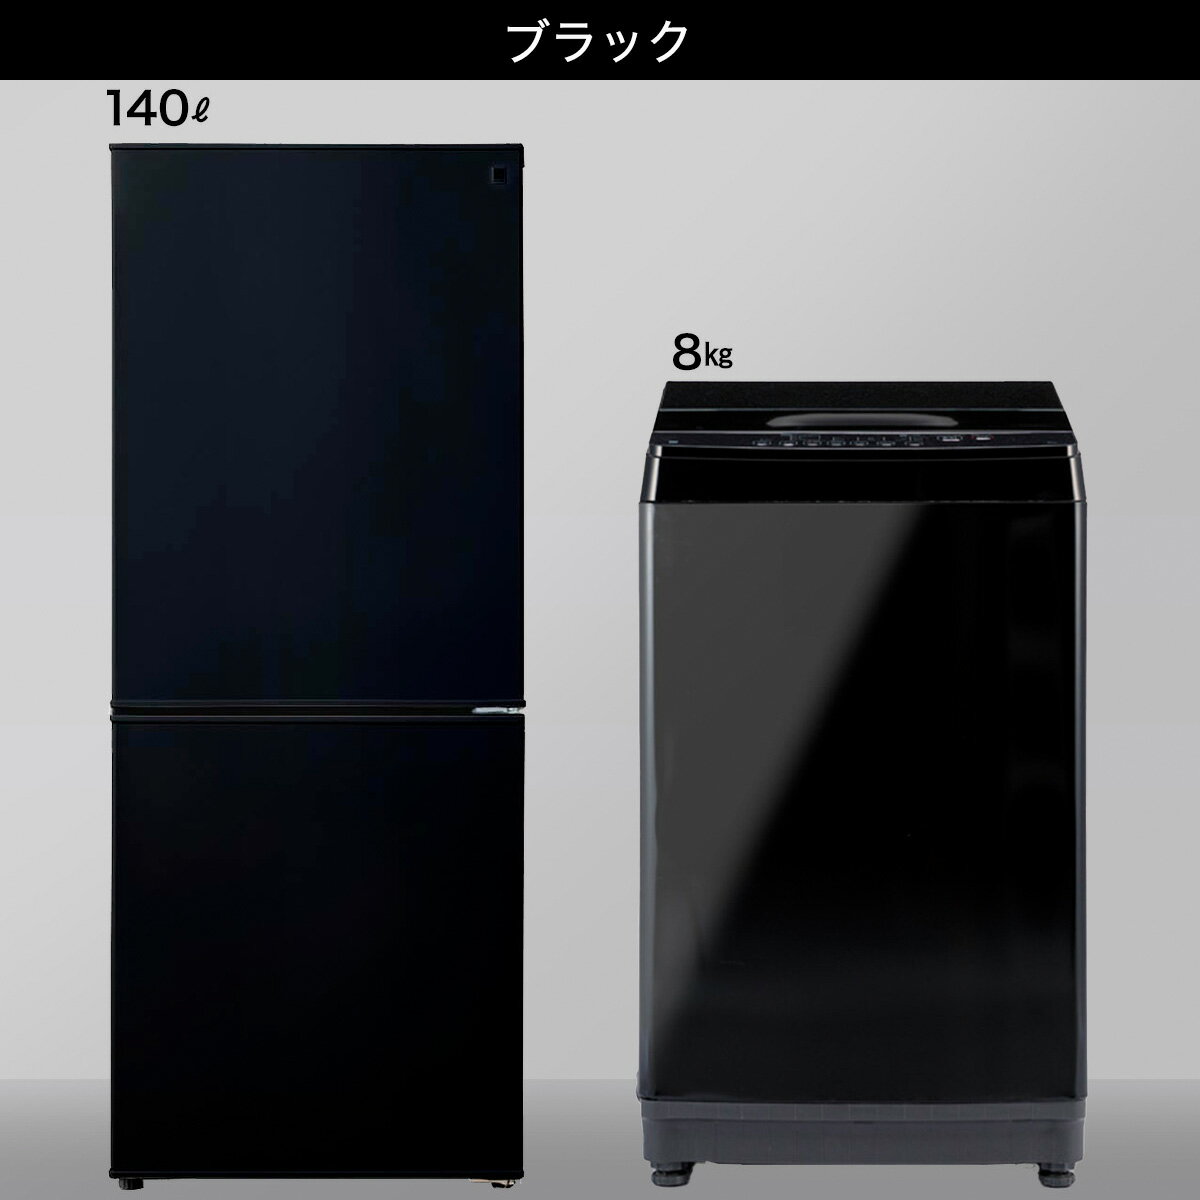 【家電2点セット】140L冷蔵庫+8kg洗濯機...の紹介画像3